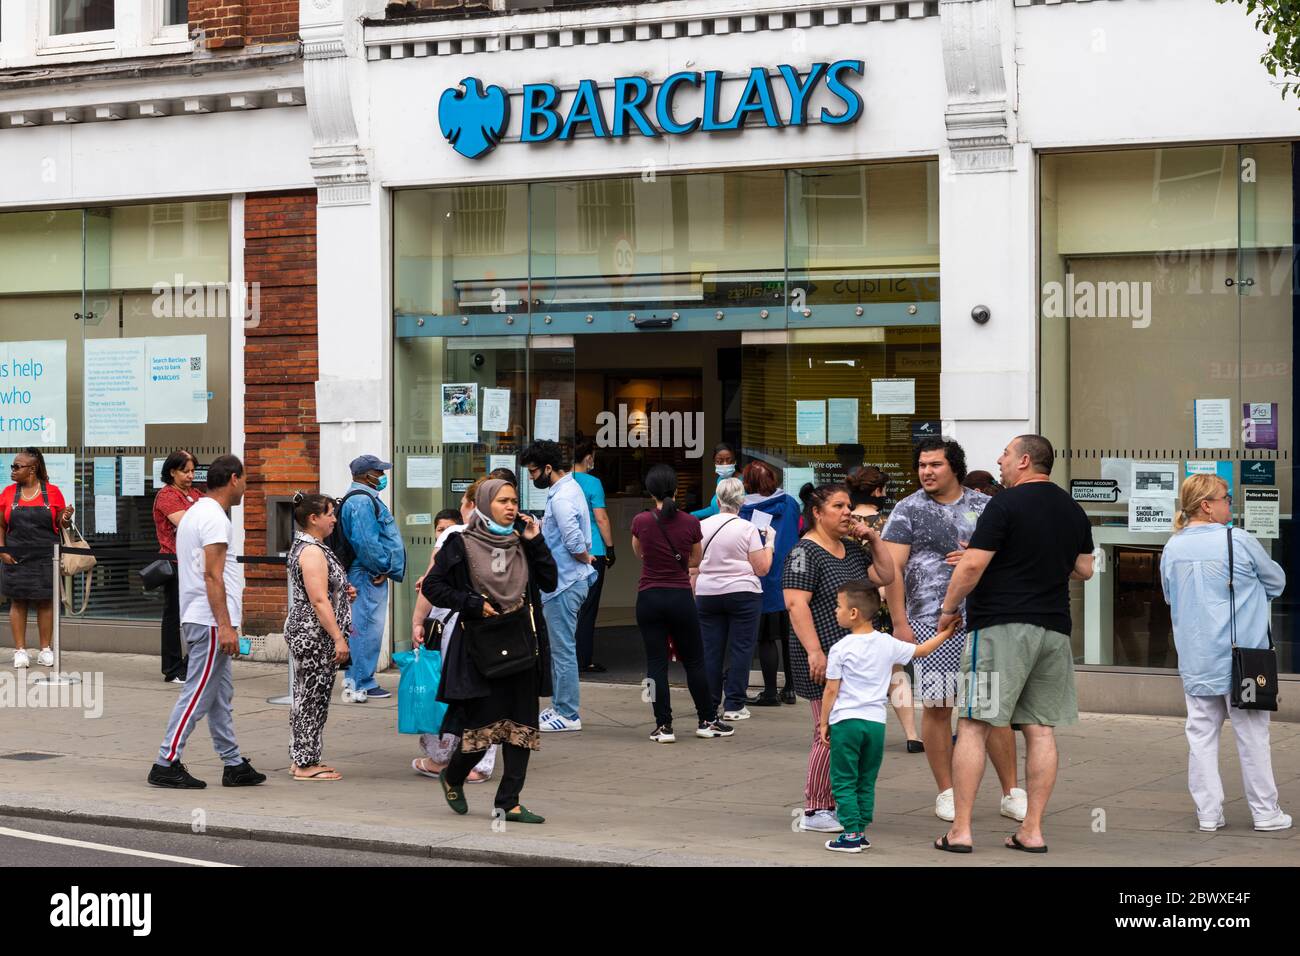 Una folla di persone fuori da una filiale di Barclays Bank. Le restrizioni di allontanamento sociale hanno causato lunghe code soprattutto per le banche. Foto Stock